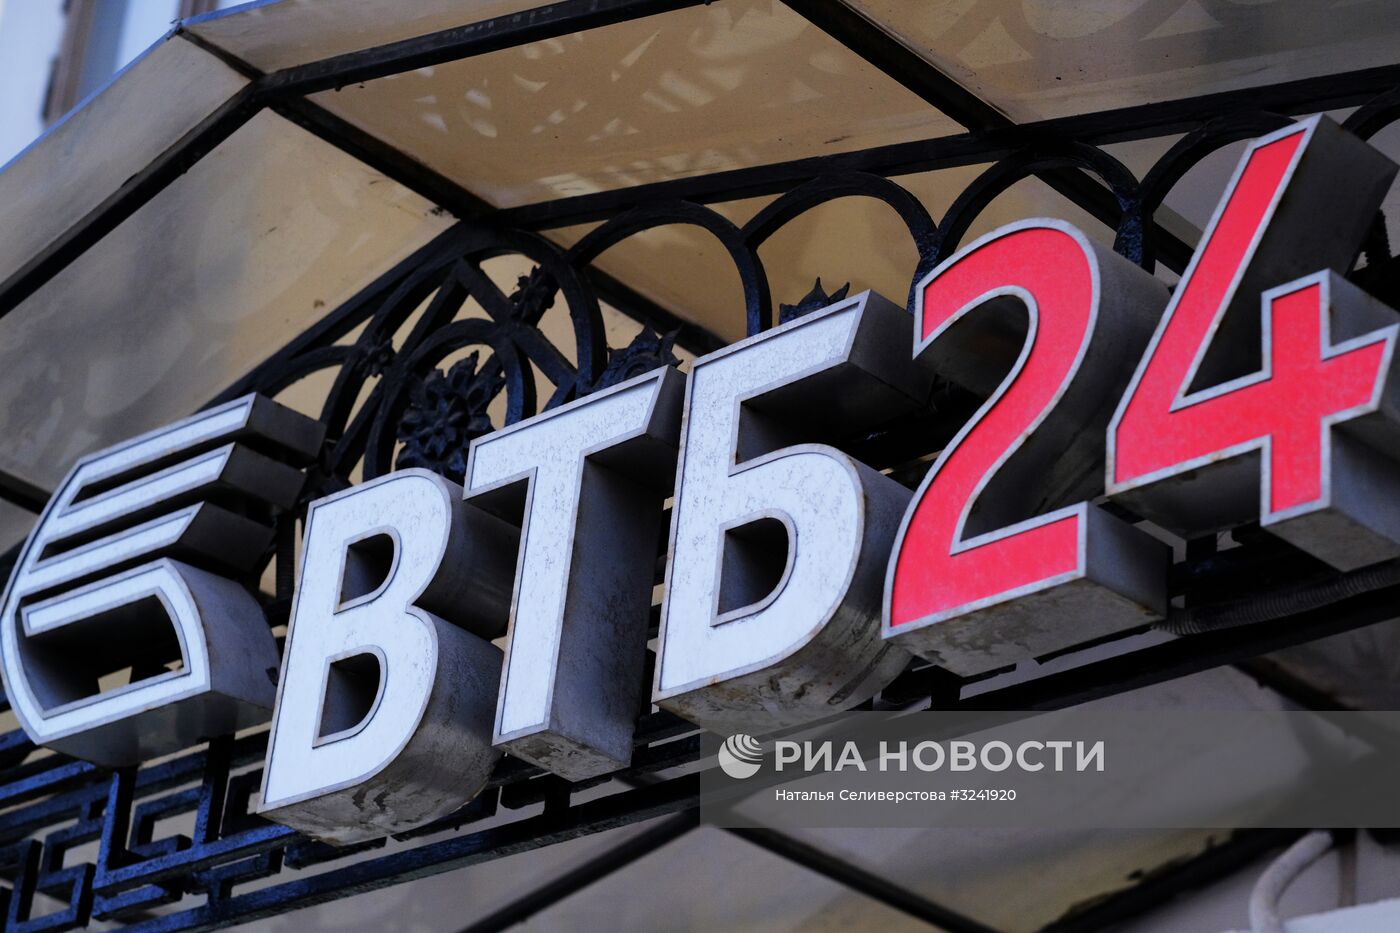 Банк ВТБ24